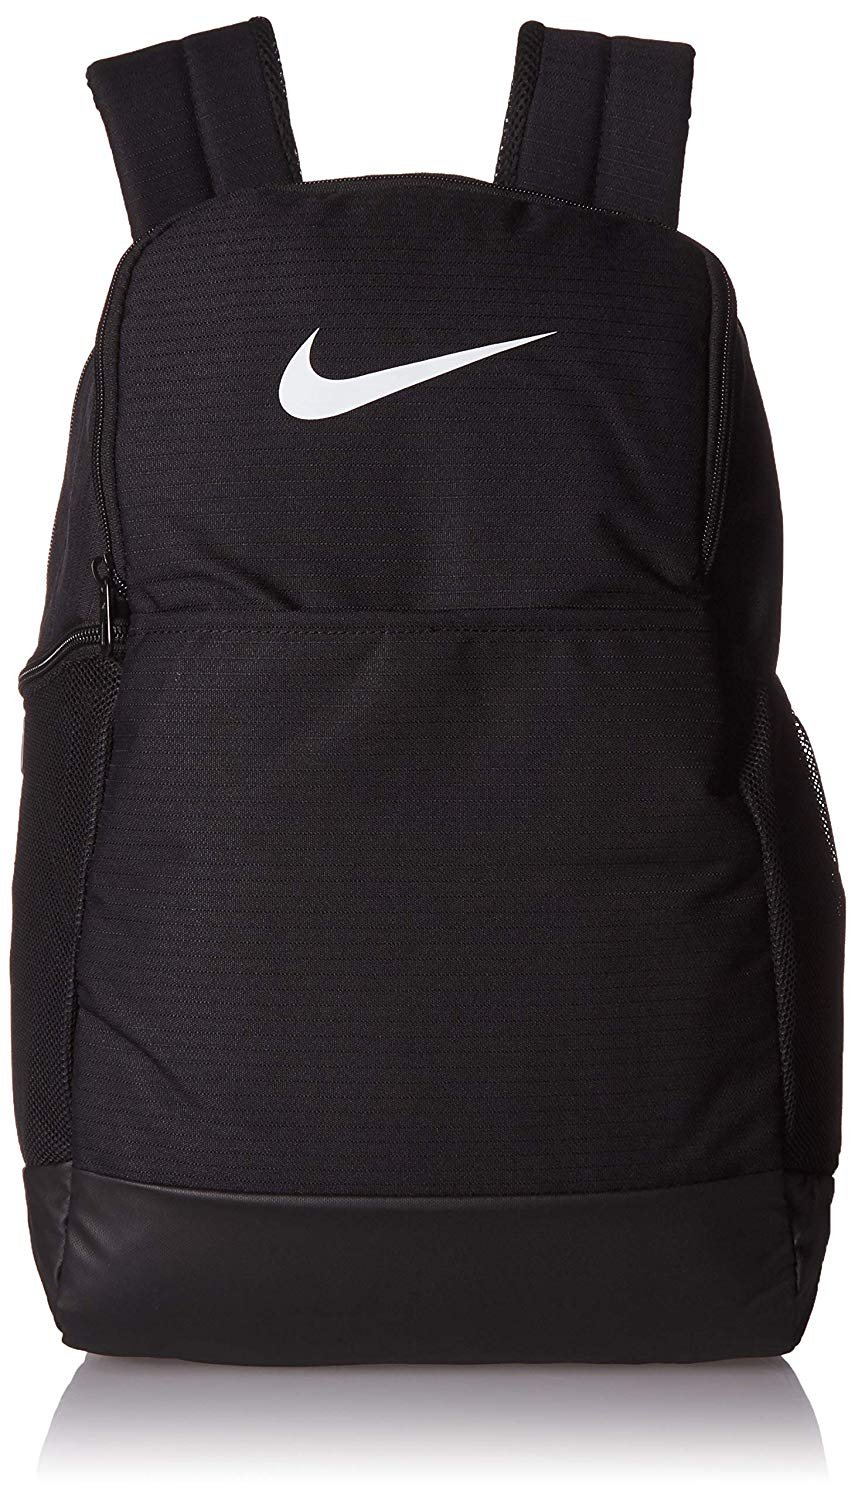 Nike Brasilia BA5954 Backpack - Black for sale online